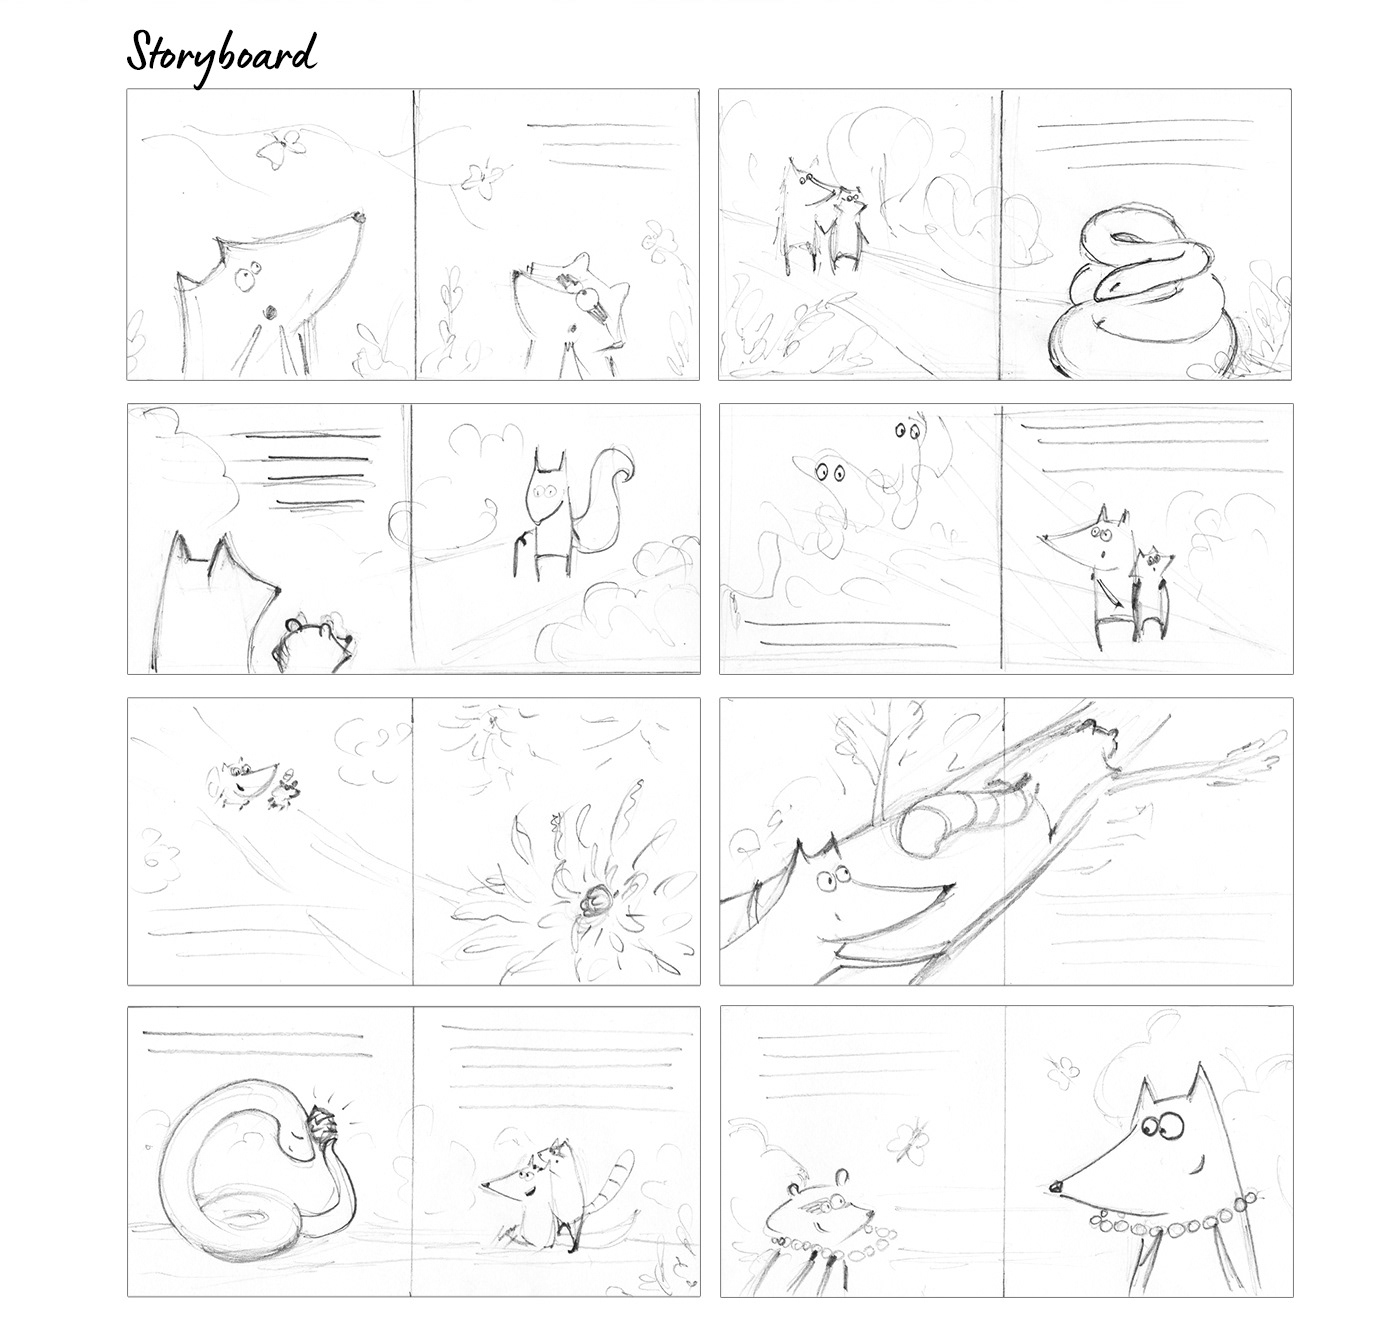 Illustrations for children's book on Behance